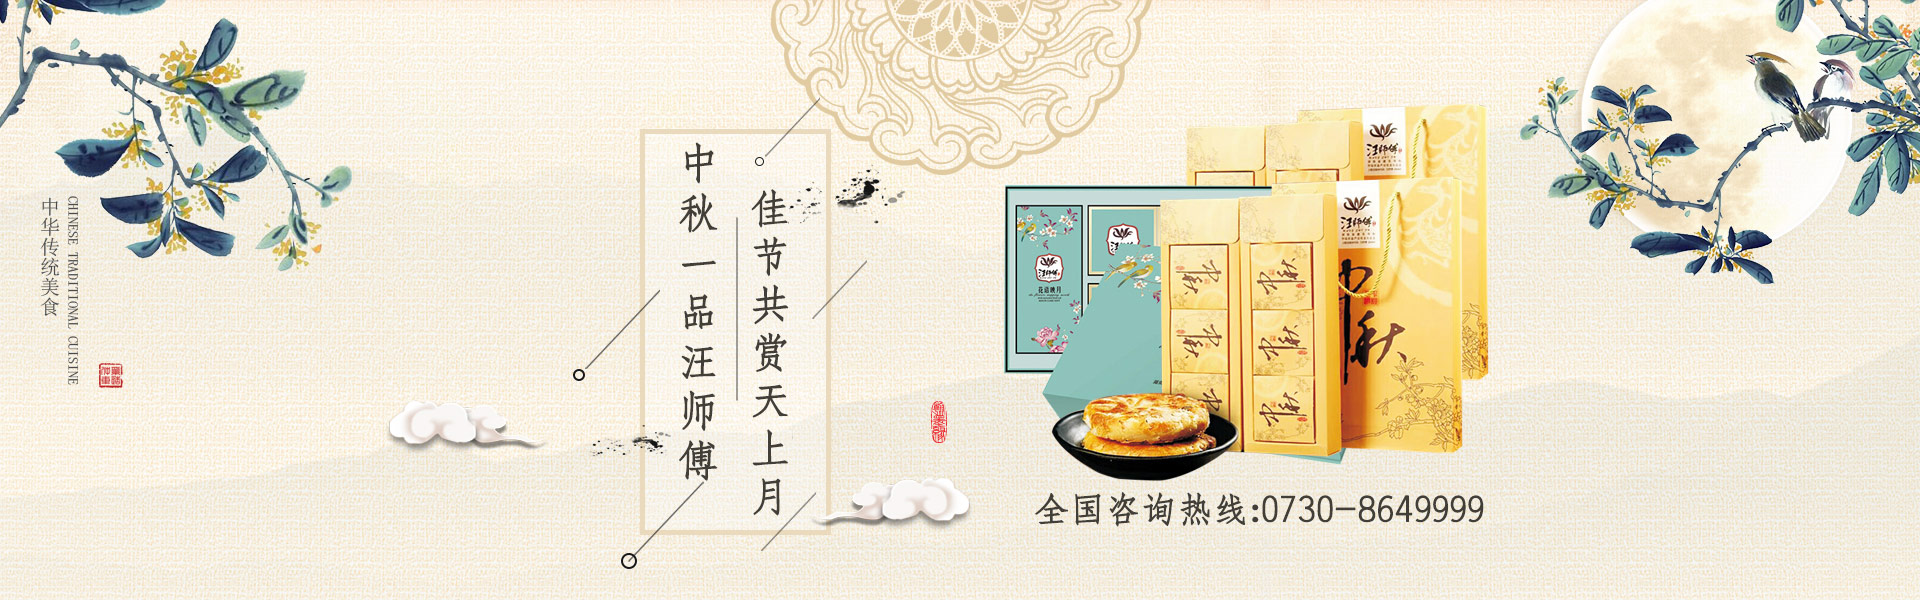 湖南汪师傅食品有限公司_礼粽|月饼|干货|煎饼系列销售哪里好